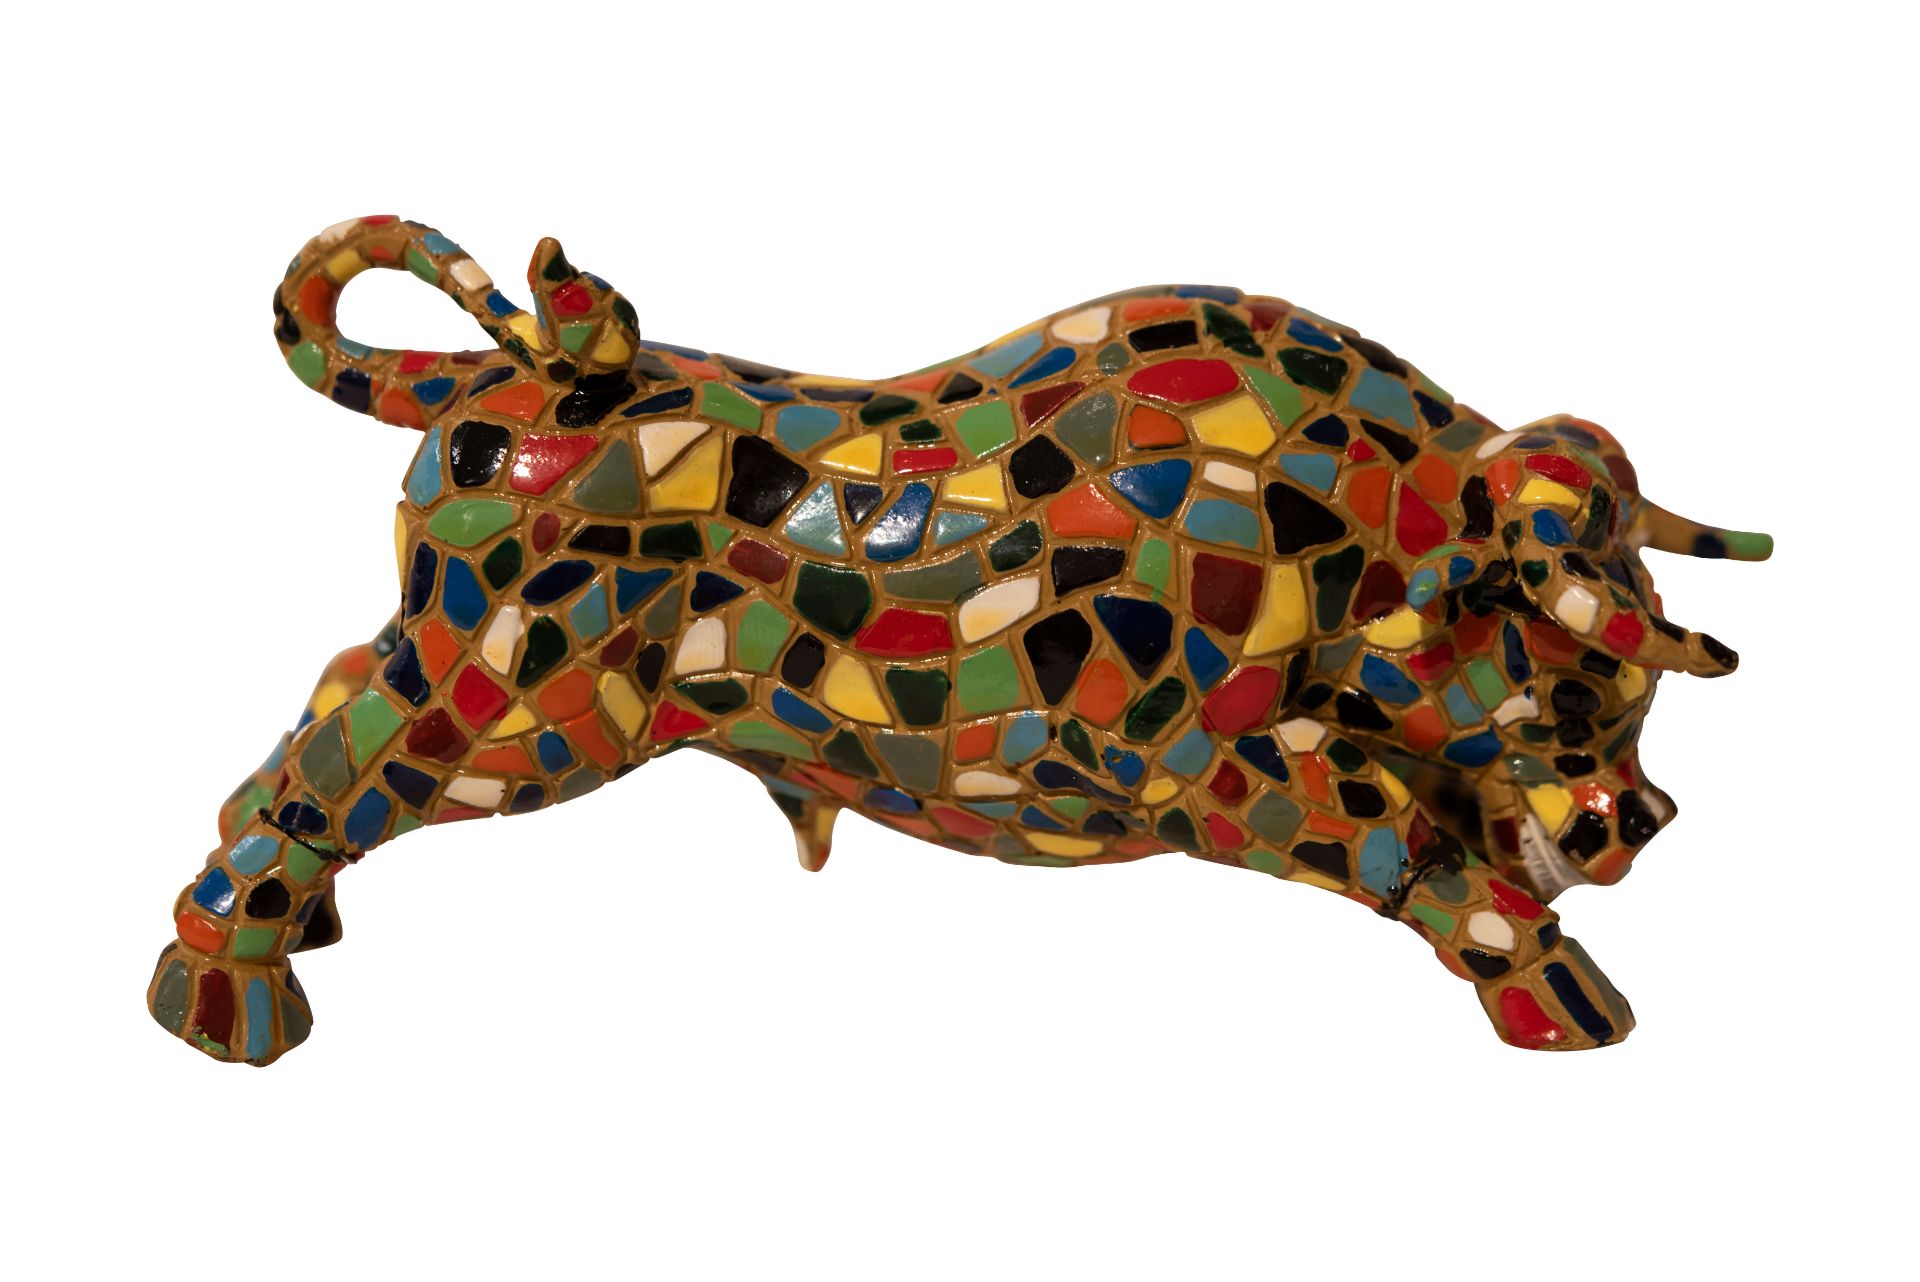 Bunter Keramik Stier, Symbol von Spanien | Colorful Ceramic Bull, Symbol of Spain - Image 2 of 5